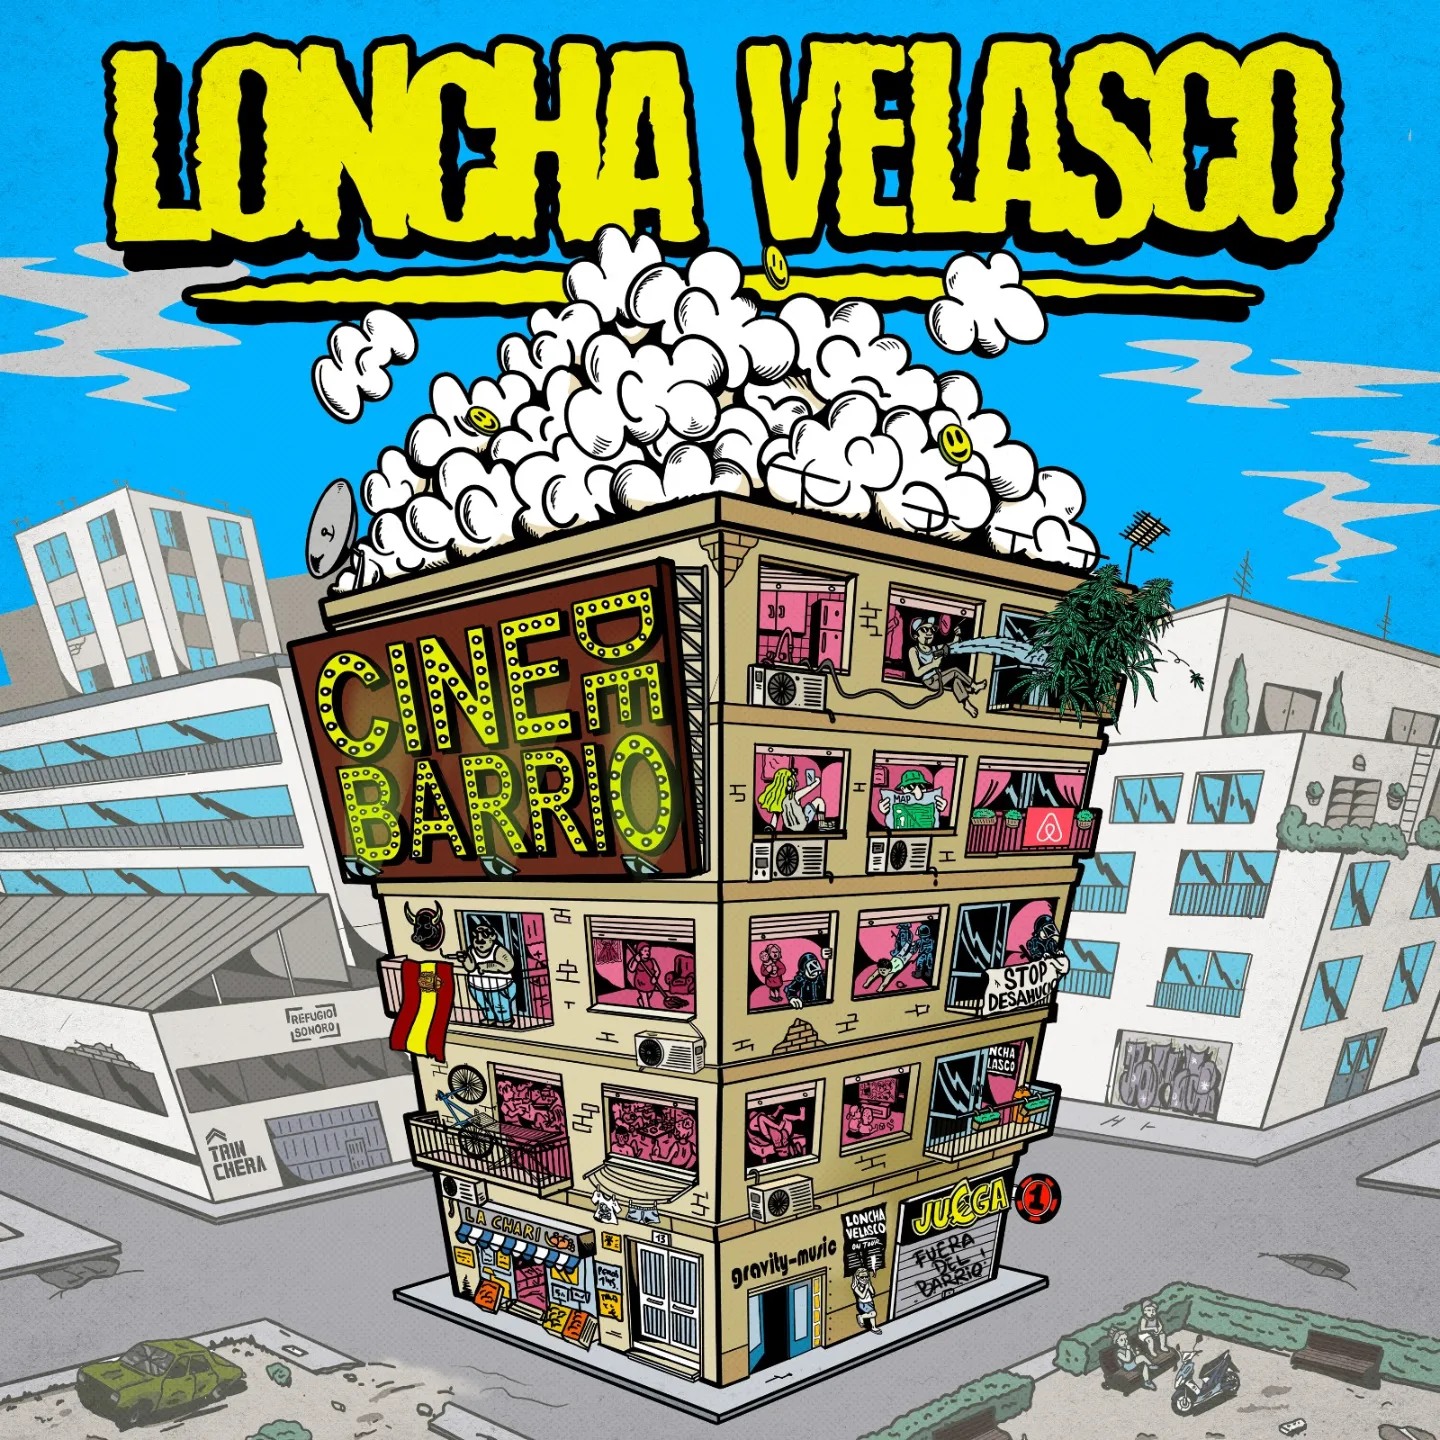 Loncha Velasco – Portada y lista de canciones de su nuevo disco